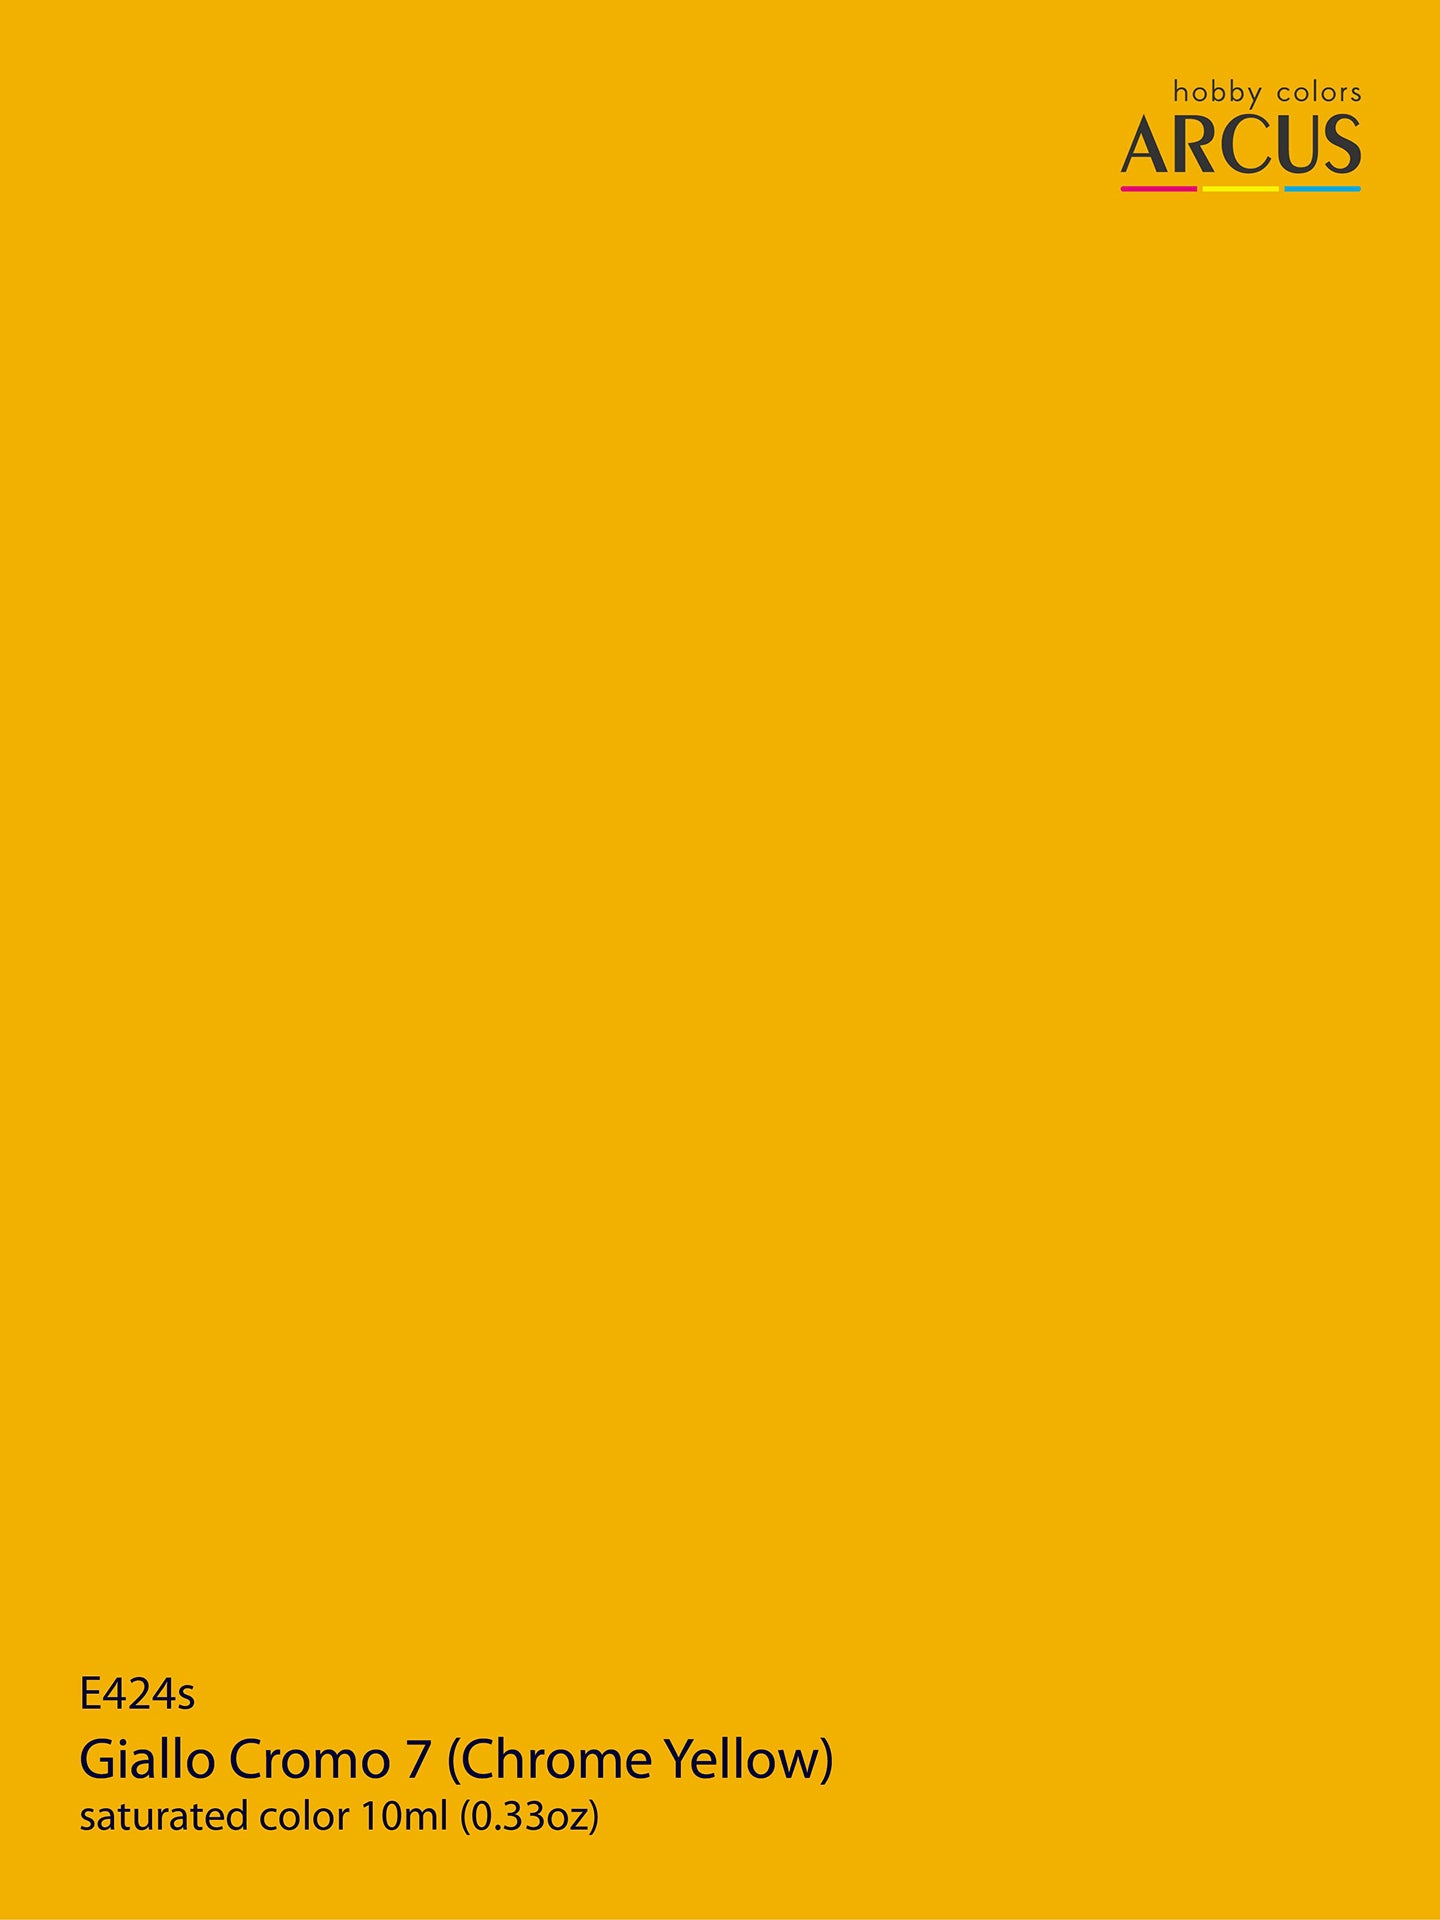 424 Giallo Cromo 7 (Chrome Yellow)